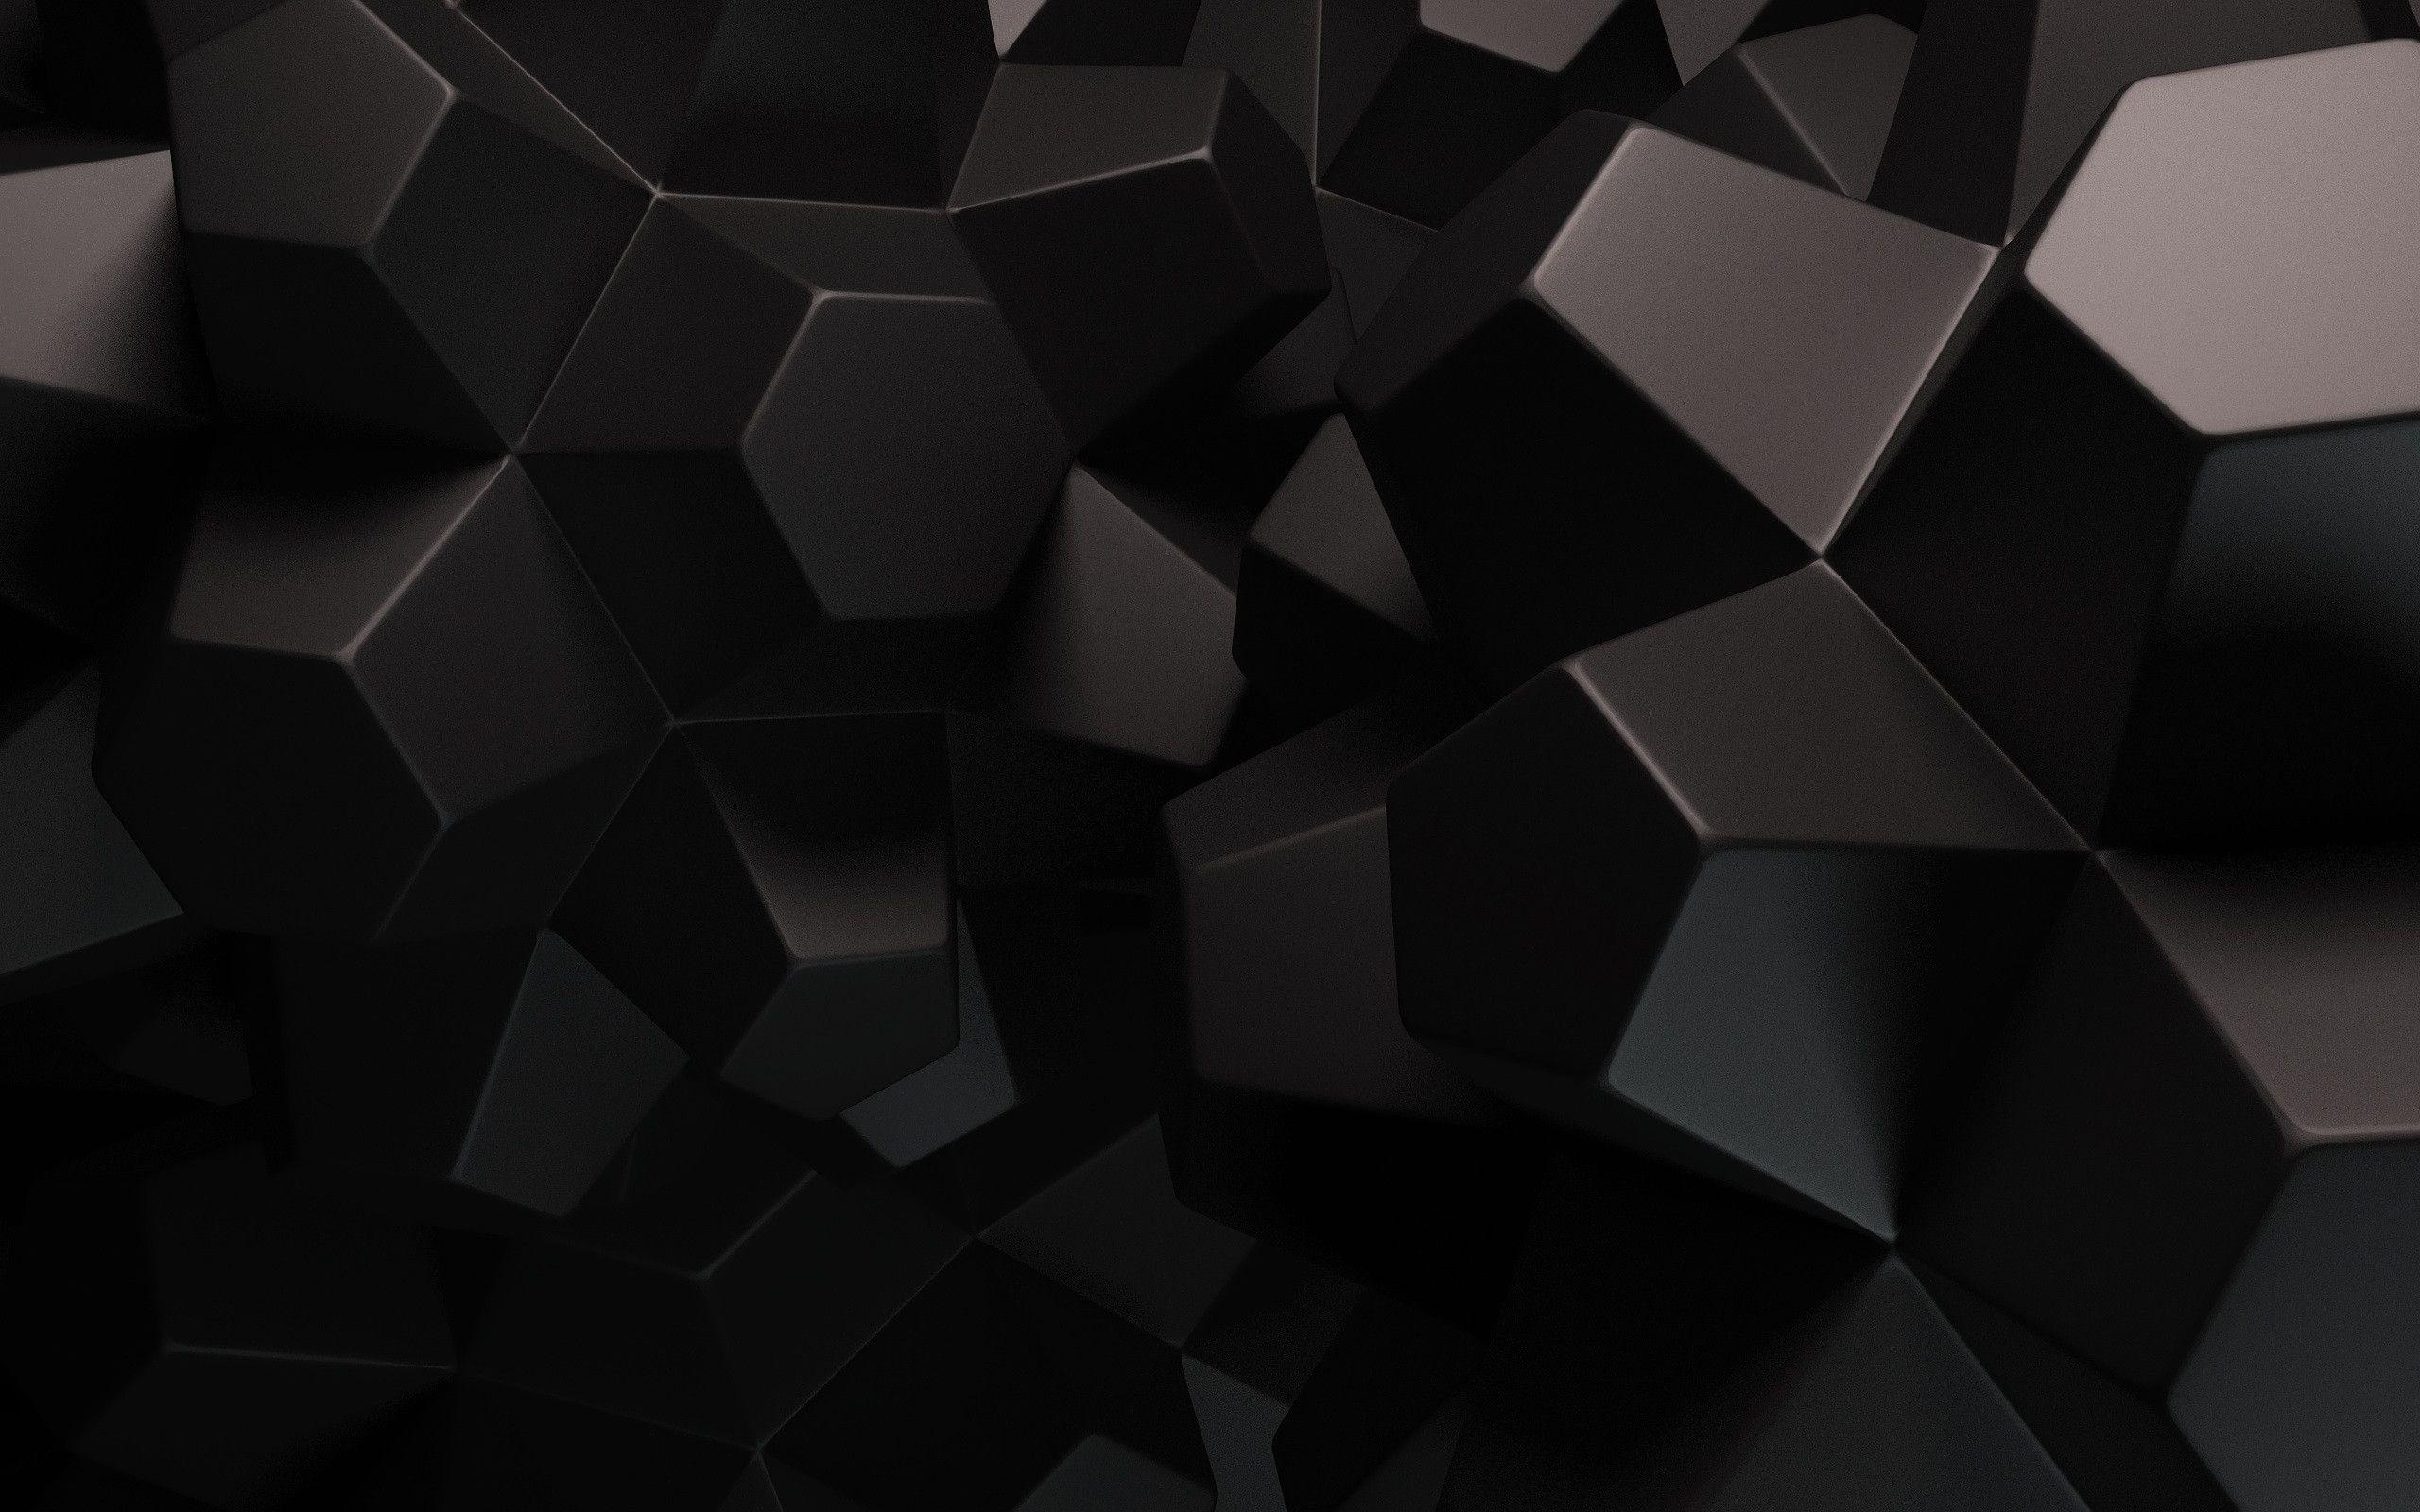 Hình nền trừu tượng đen mang đến một phong cách đầy tuyệt vời cho thiết bị của bạn. Với chủ đề tối giản nhưng không kém phần chất lượng, bức ảnh sẽ khiến cho bạn cảm thấy yên tâm và tập trung trong công việc. Hãy tải về ngay hình nền trừu tượng đen để làm mới thiết bị của bạn!